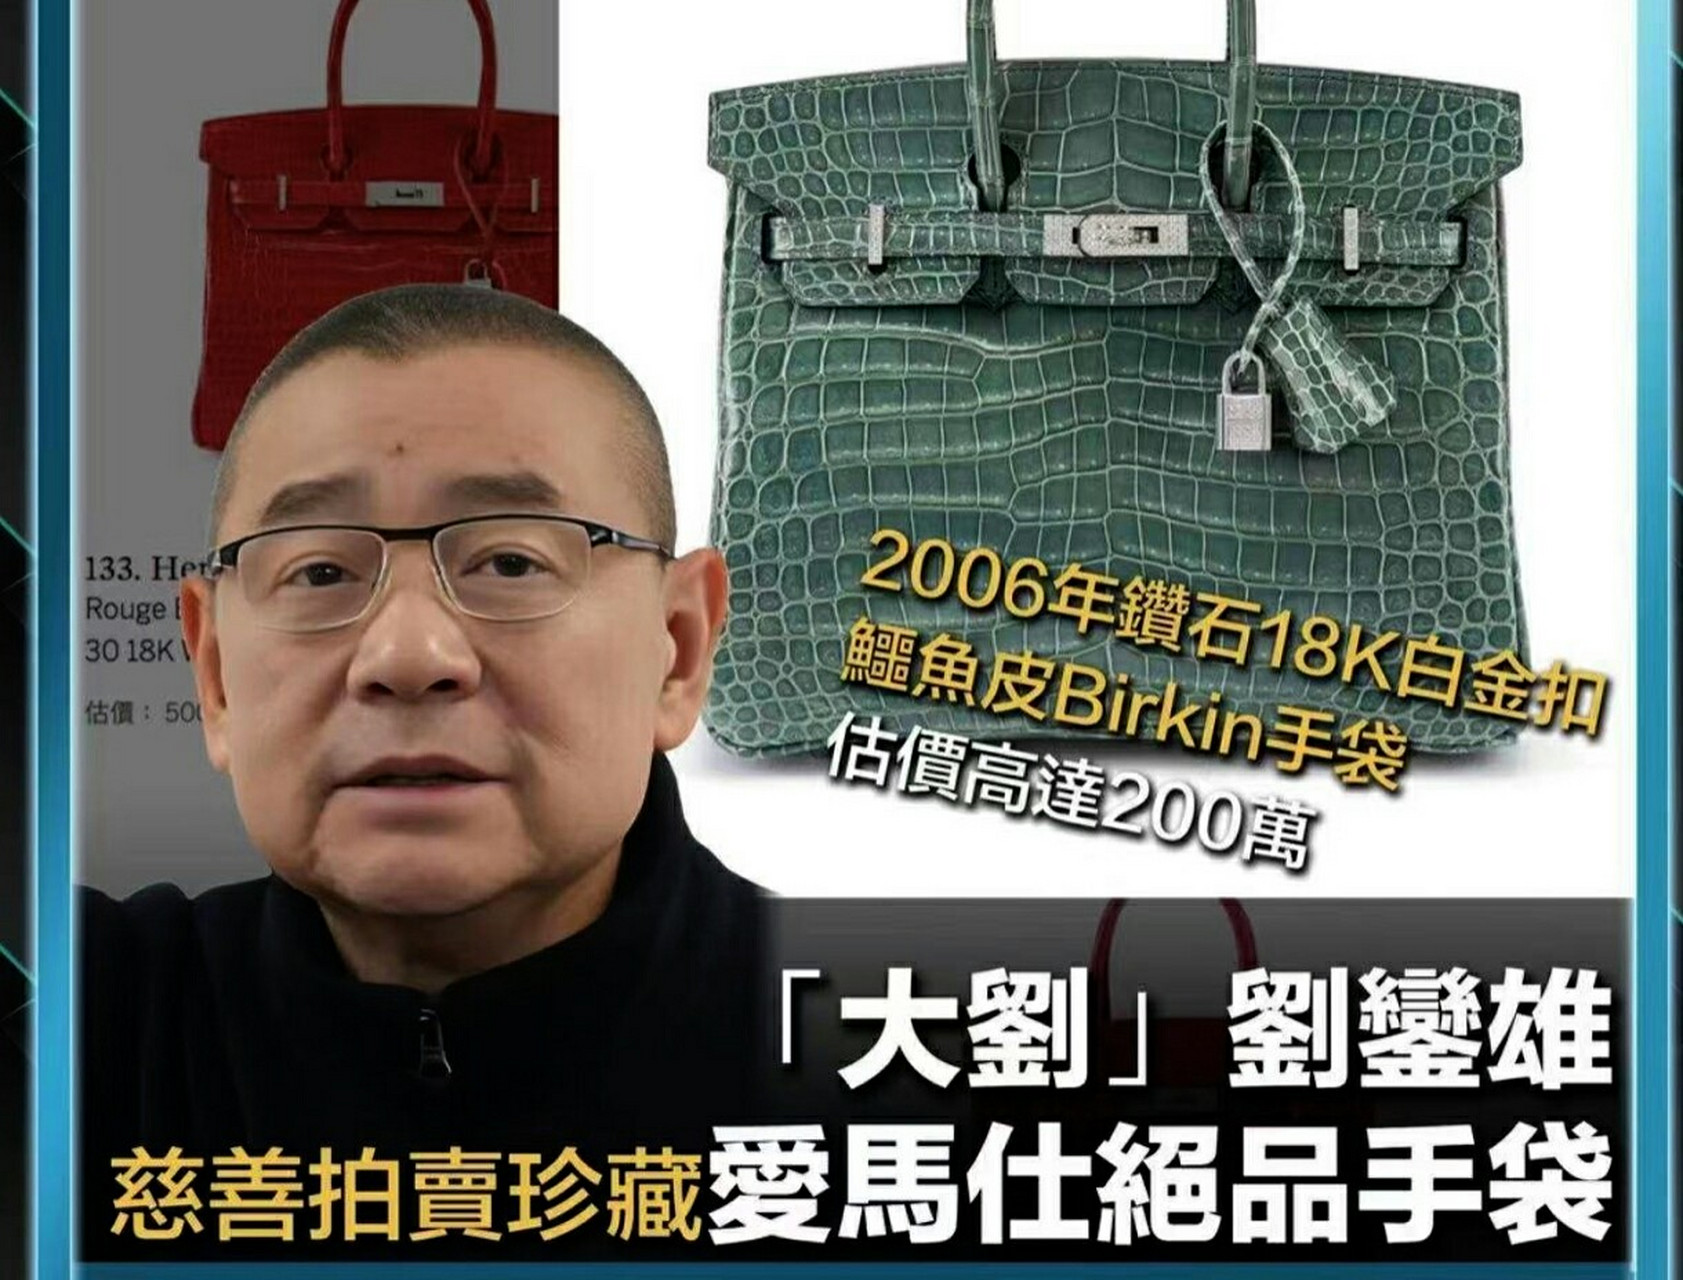 香港富豪刘銮雄拍卖76只爱马仕包!估值超1600万!真是让人大开眼界啊!